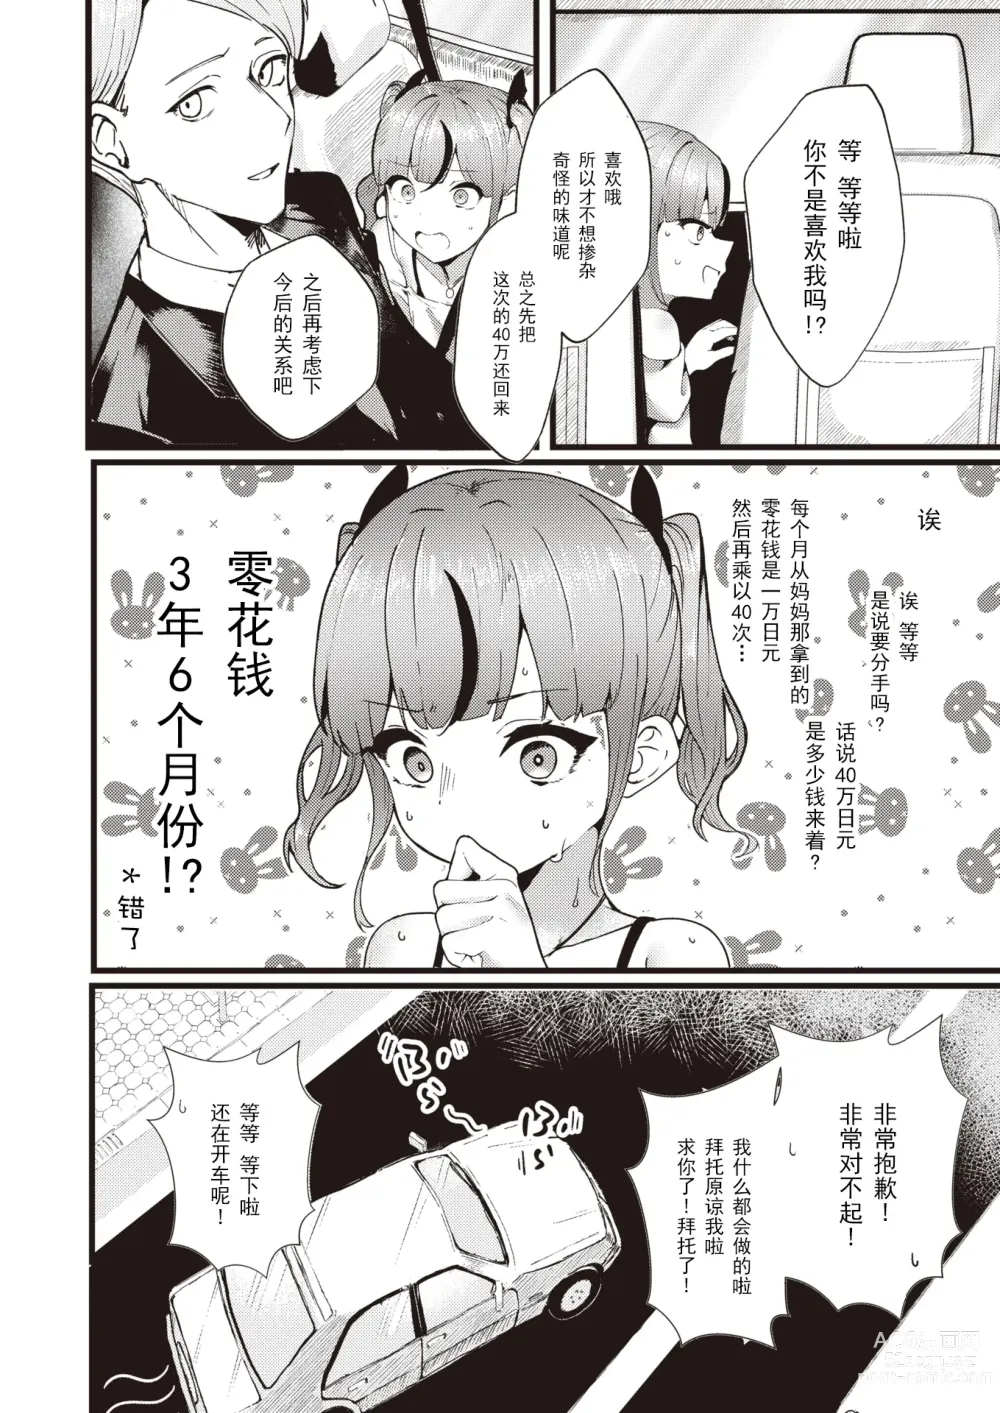 Page 6 of manga 支払いは身体で!